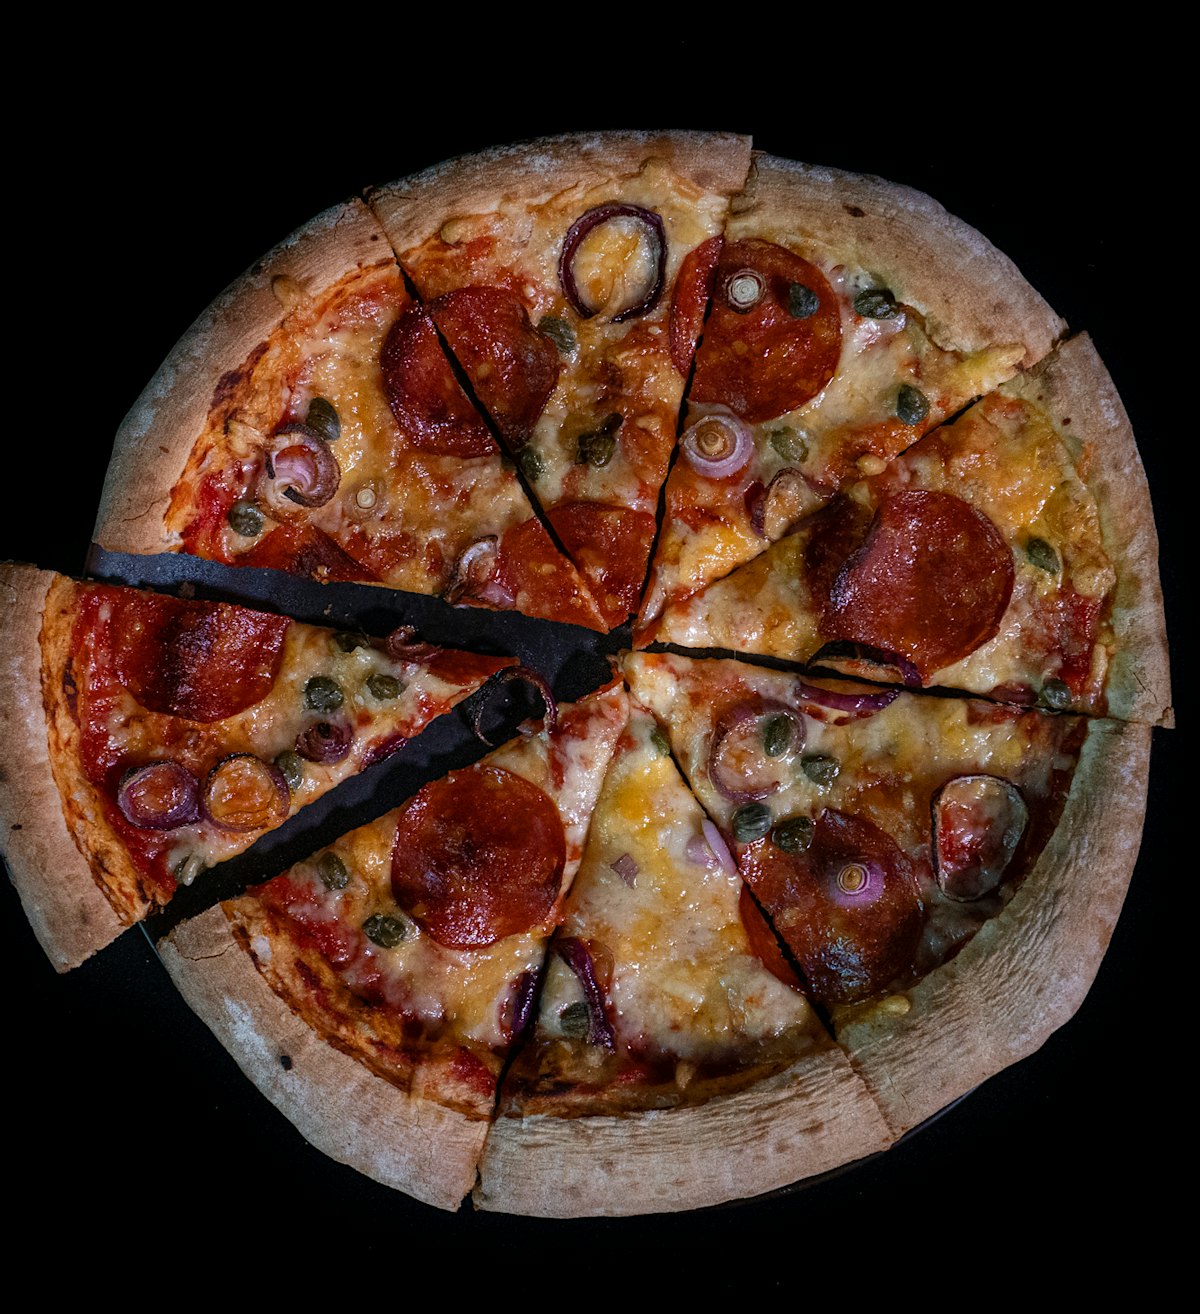 Pizza sett ovenfra på svart bakgrunn. Pizzaen har en tykk kant, ost, grønnsaker og pølsebiter på toppen, Den er delt i åtte trekanter hvor den til venstre er tatt litt ut fra ringen.